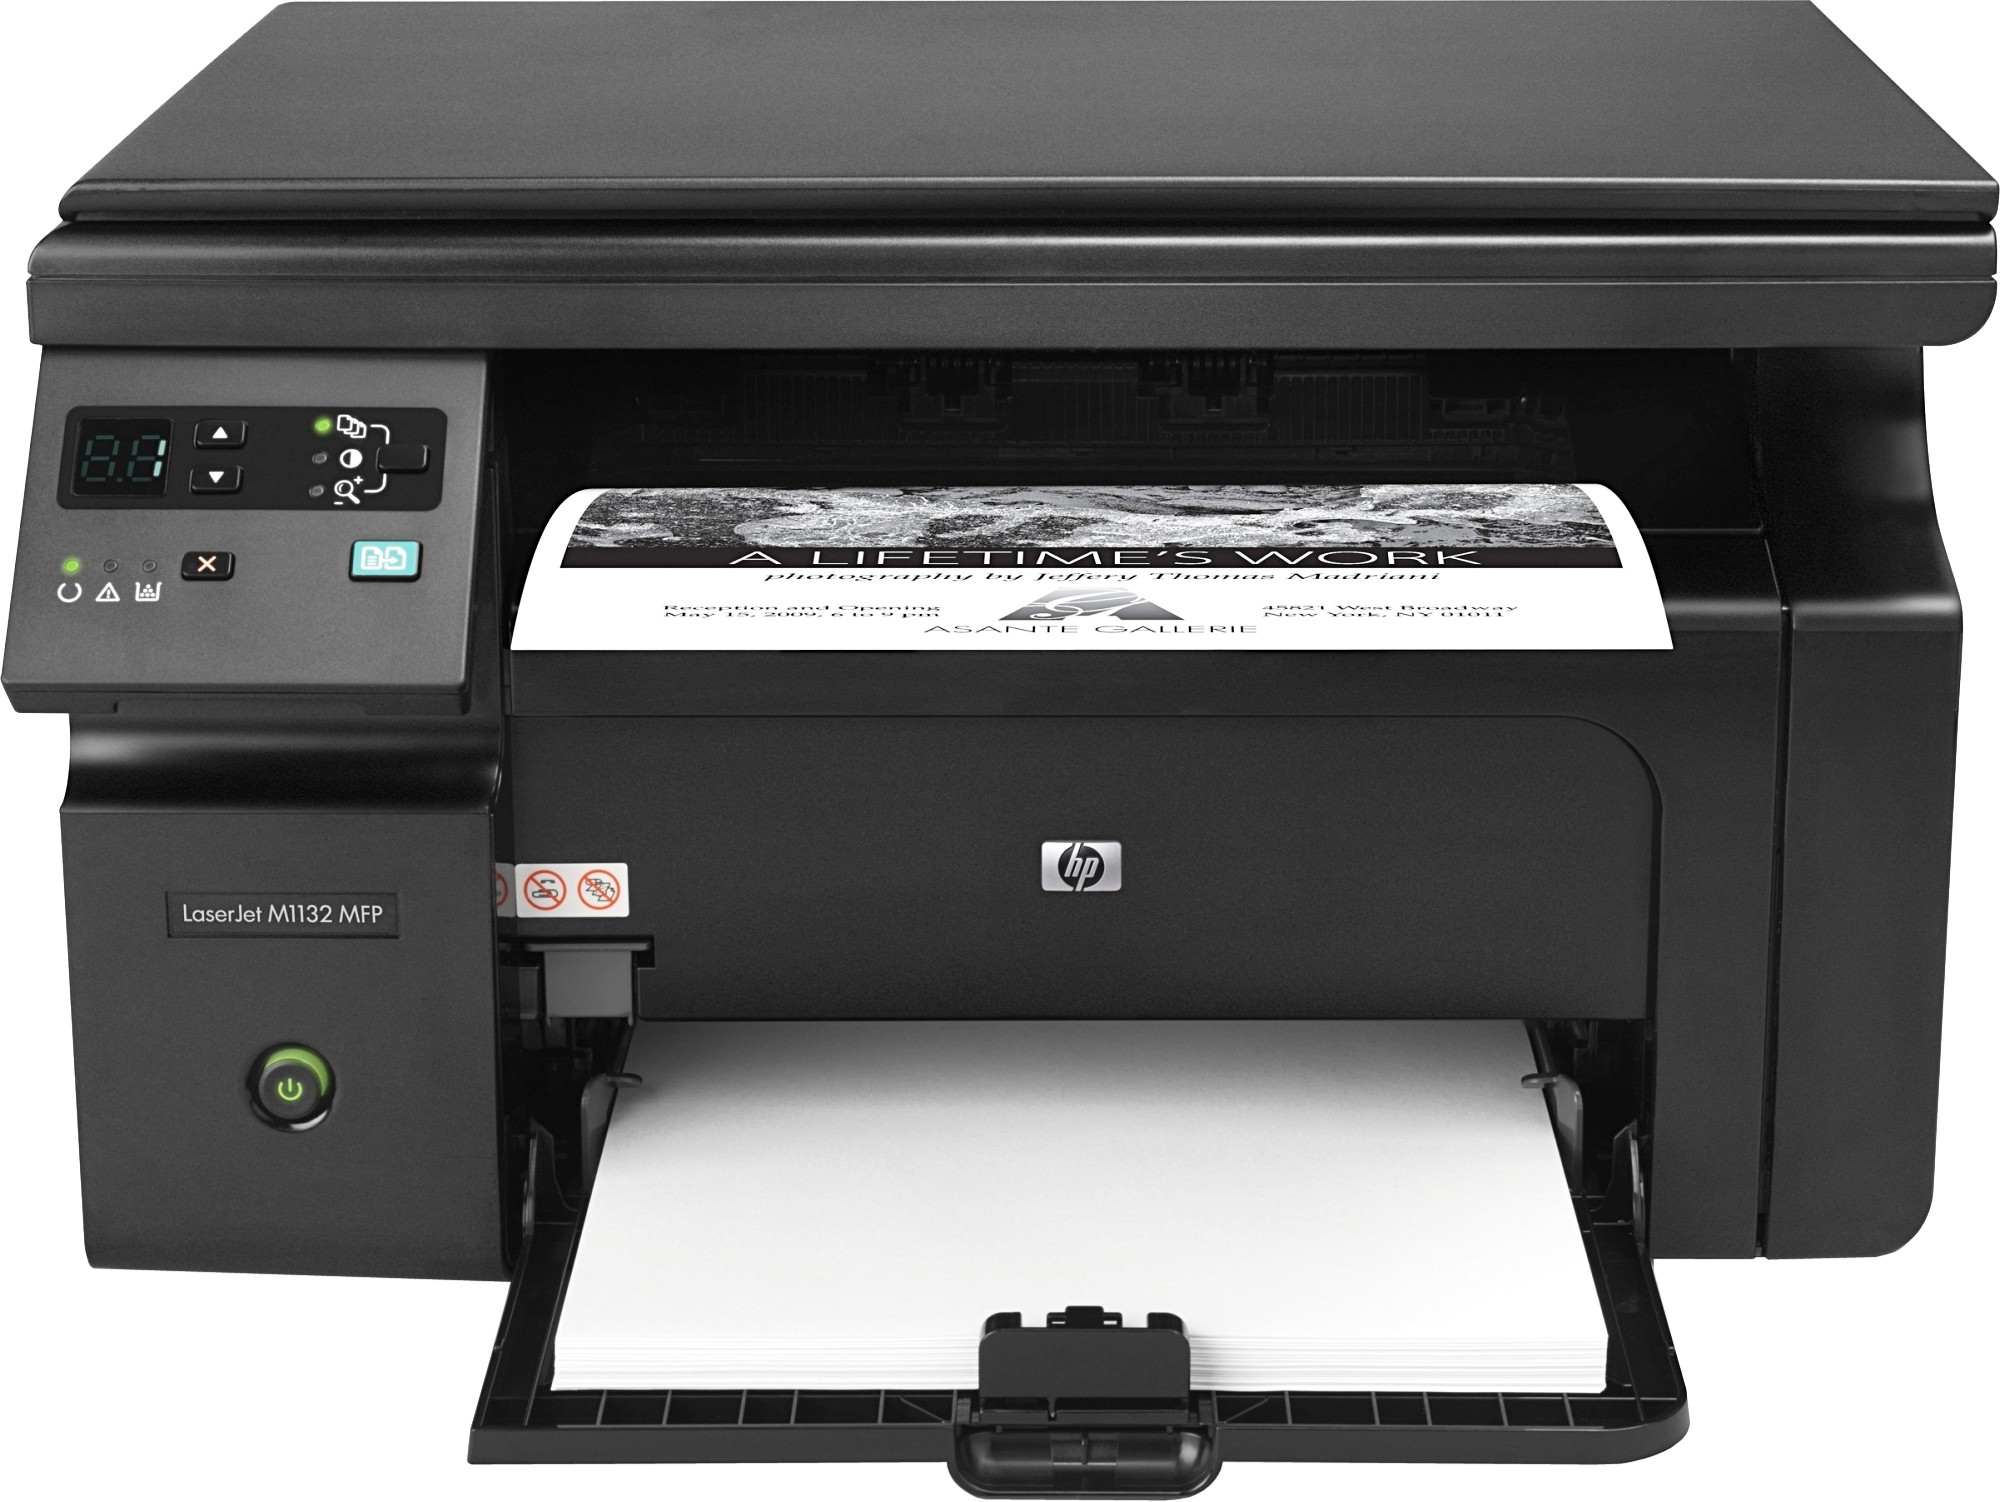 Hp Laserjet Pro M1132 Multifunction Printer Driver Download